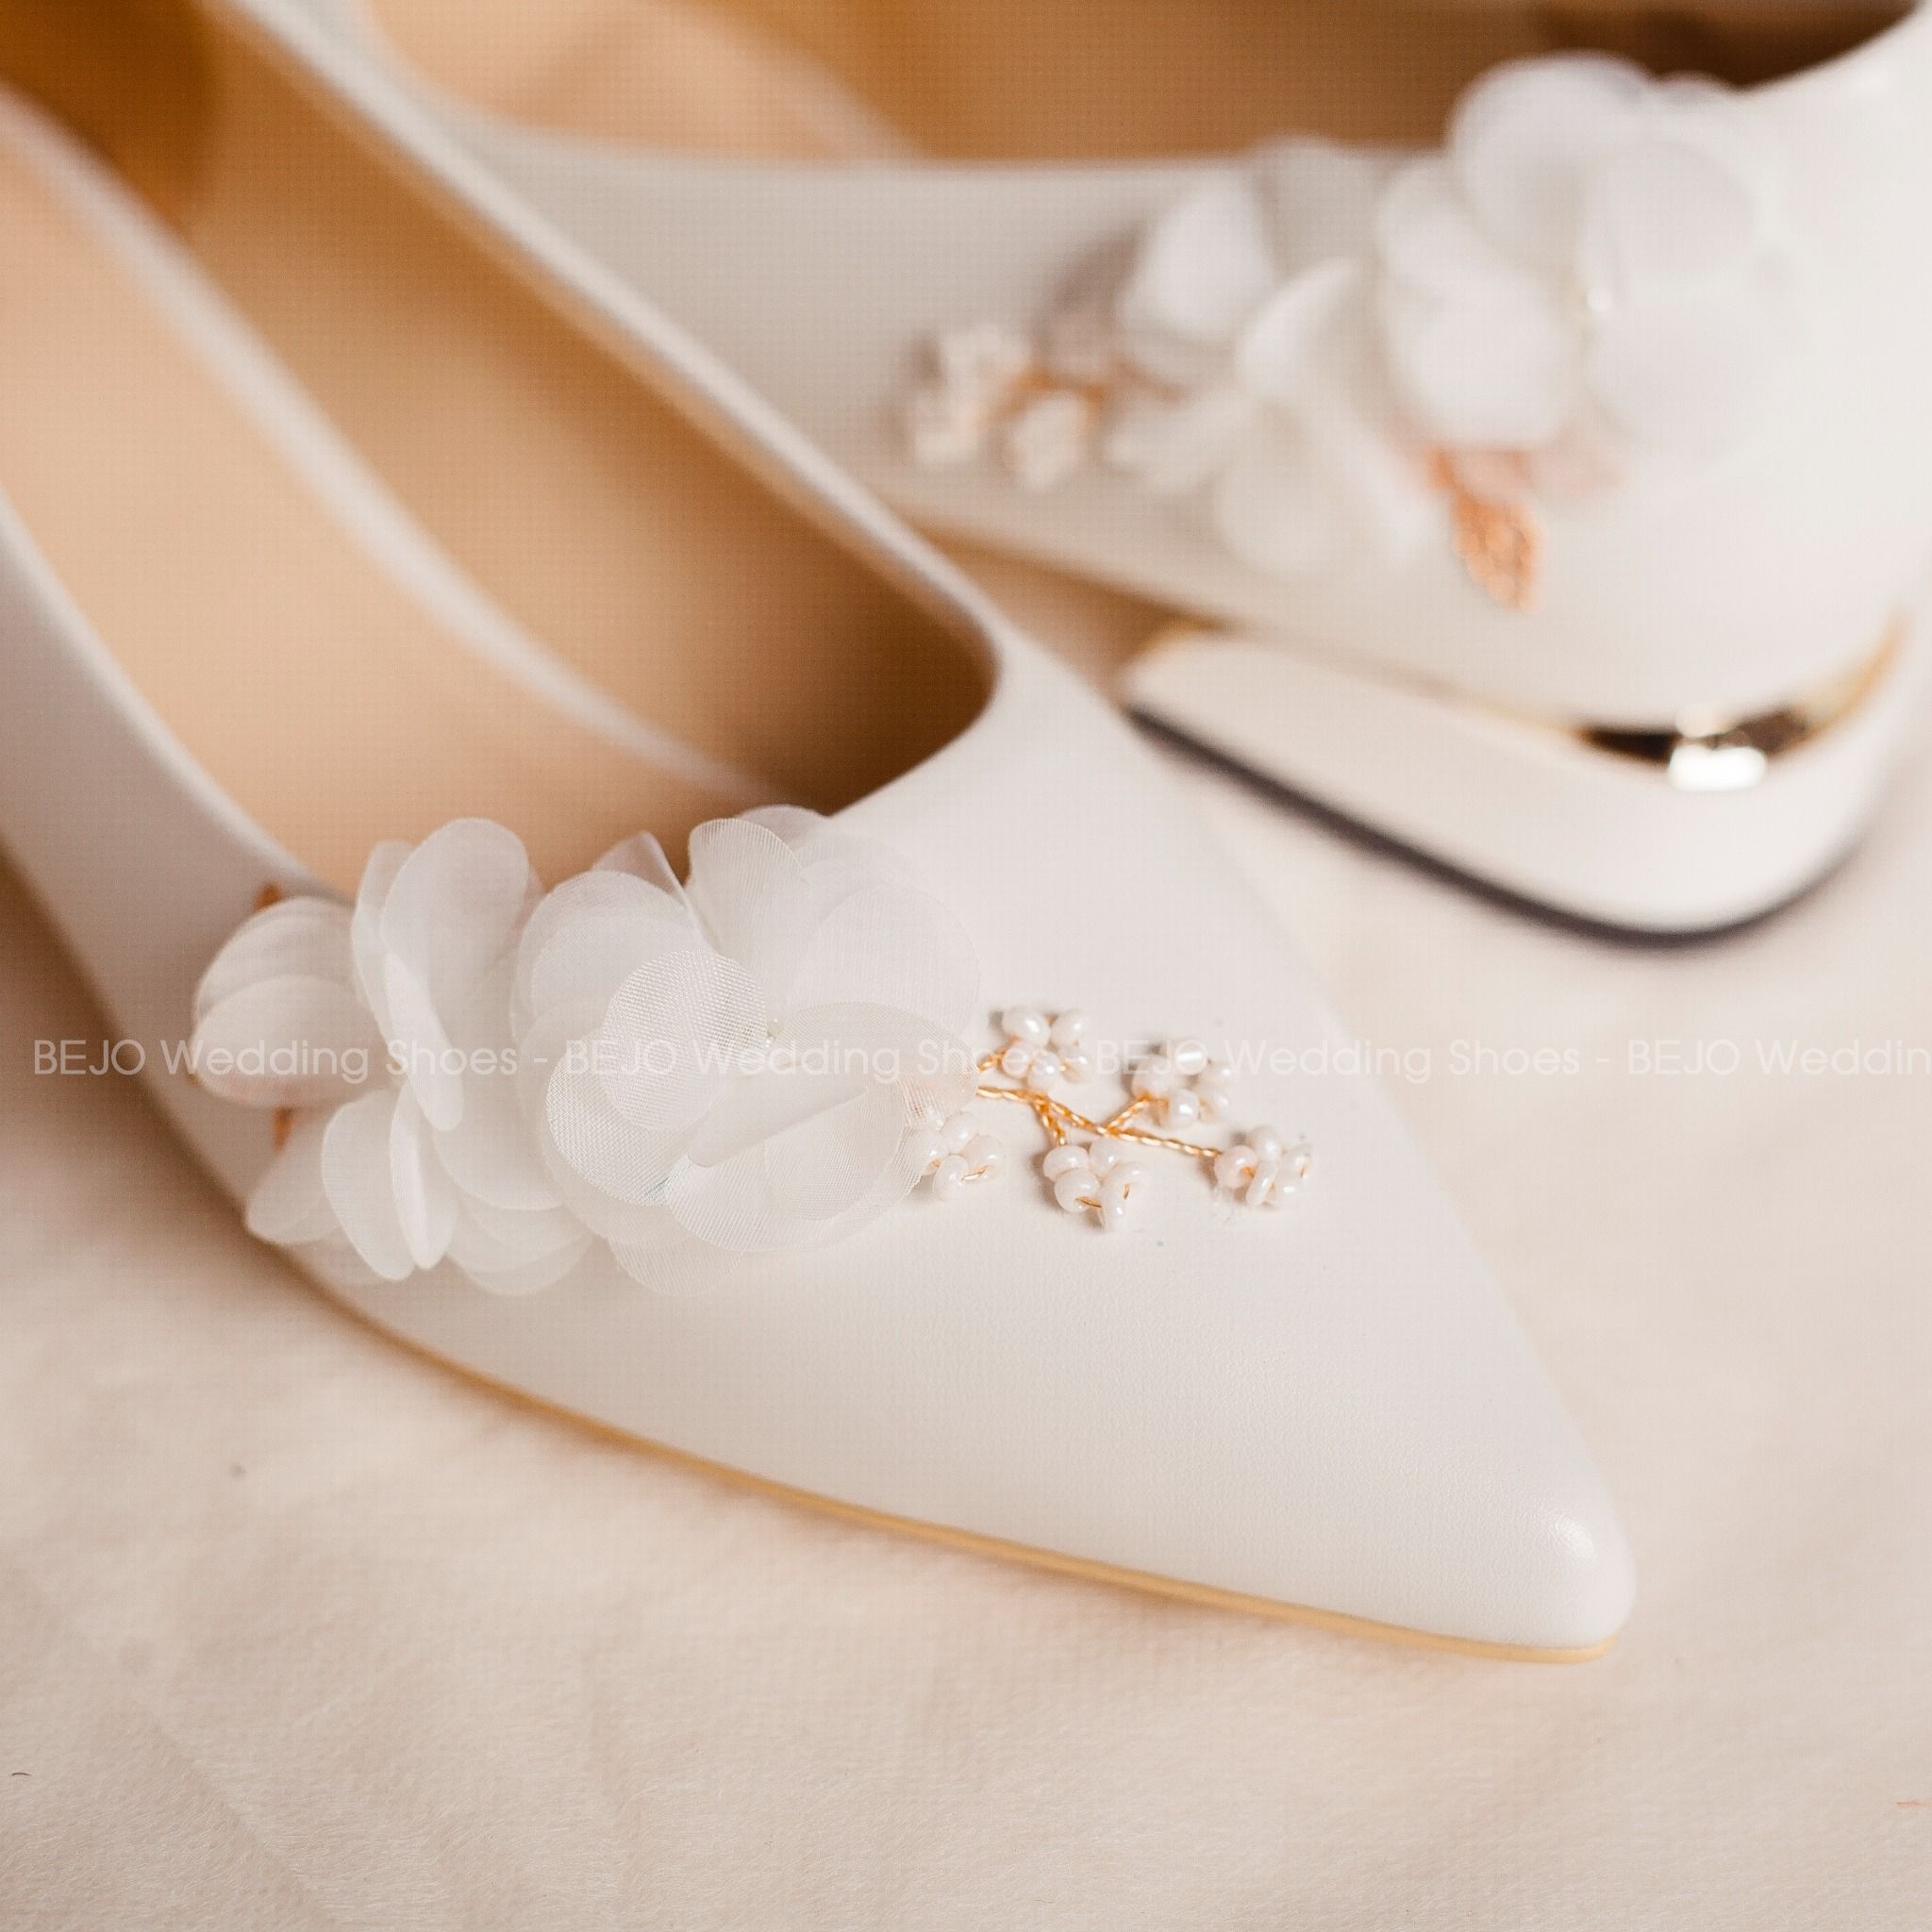  Giày cưới - Giày cô dâu cao cấp BEJO H98.05.TRANG.KT.HOAVOANLUA 